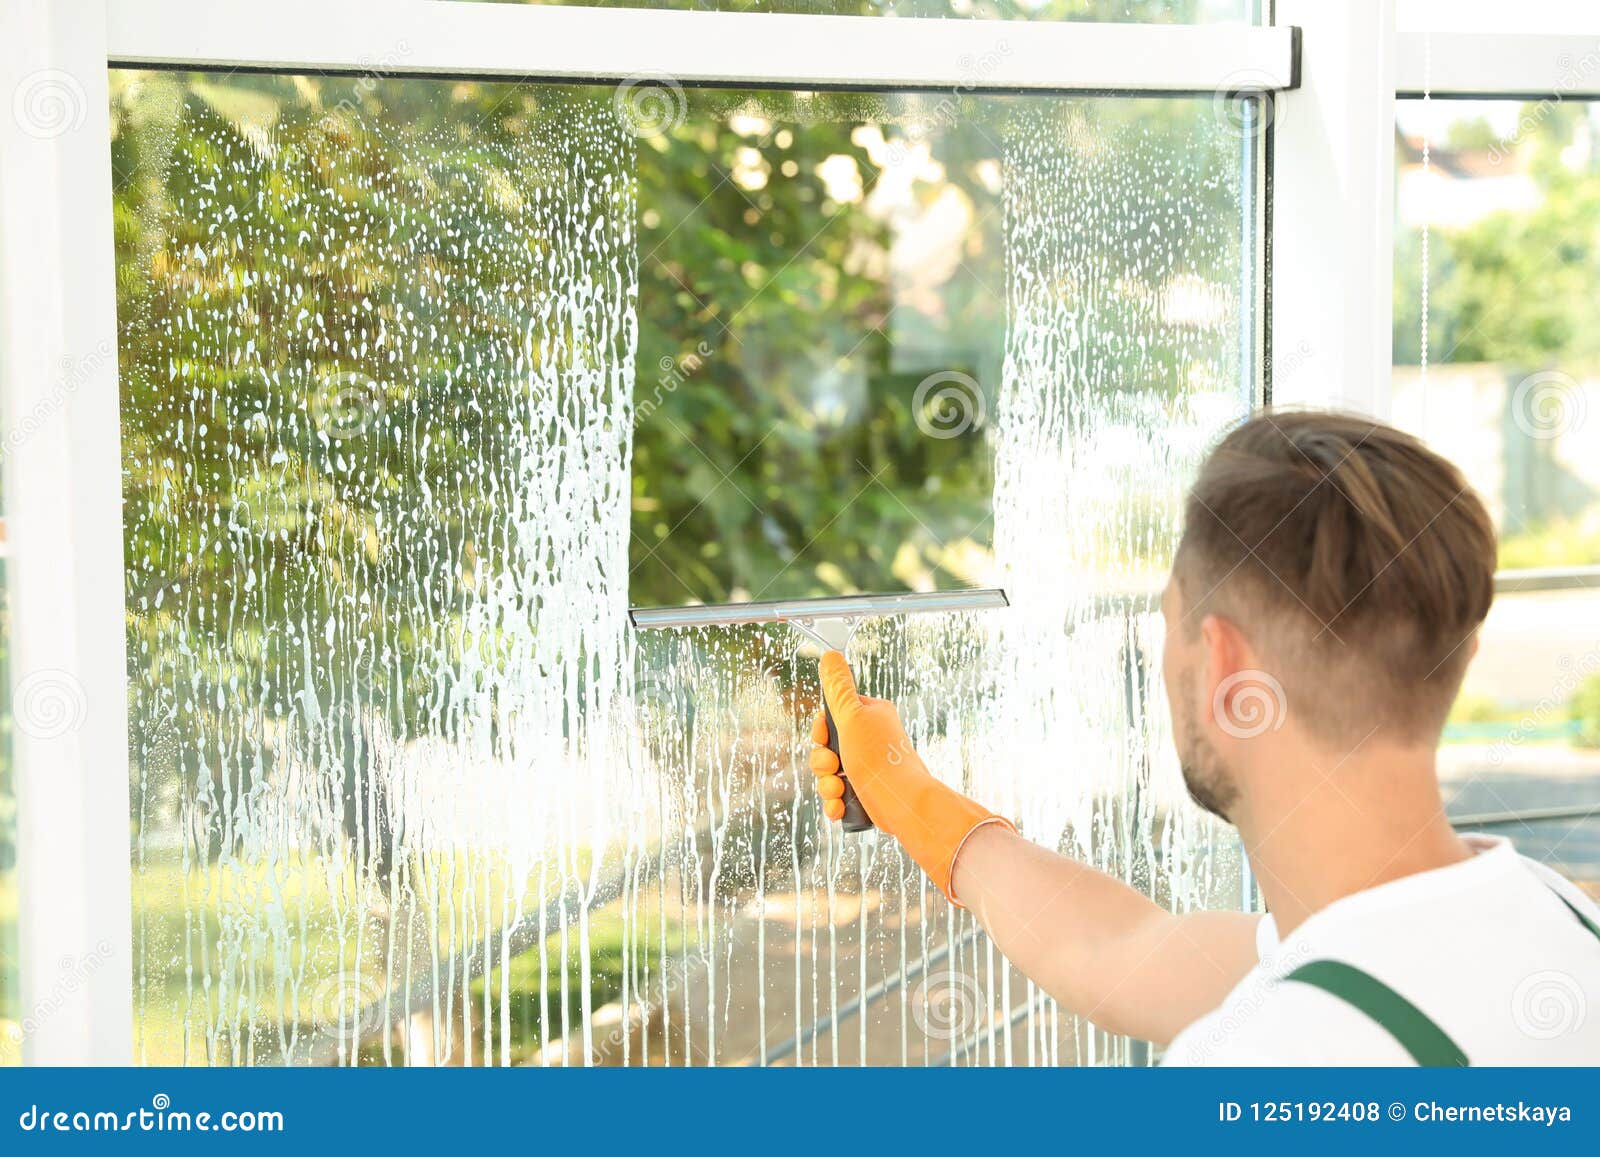 Чистка окон стекол проводится. Звук мытья окон. Мытье окон чаем. Мужчина моющий окно. Мытье окон шлангом.